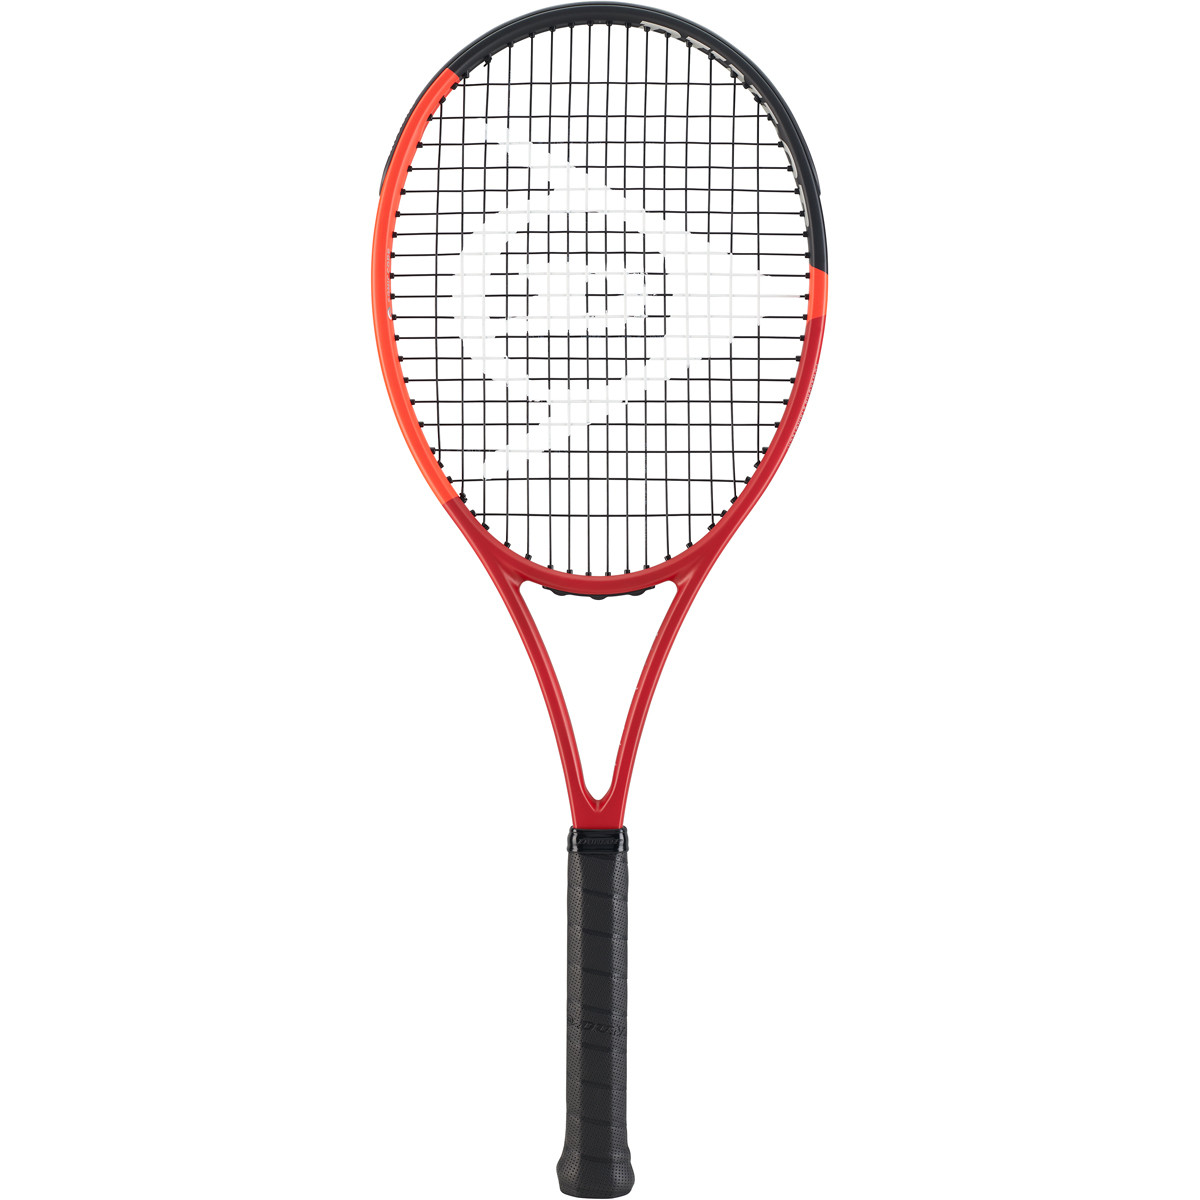 Le plan de cordage d'une raquette de tennis